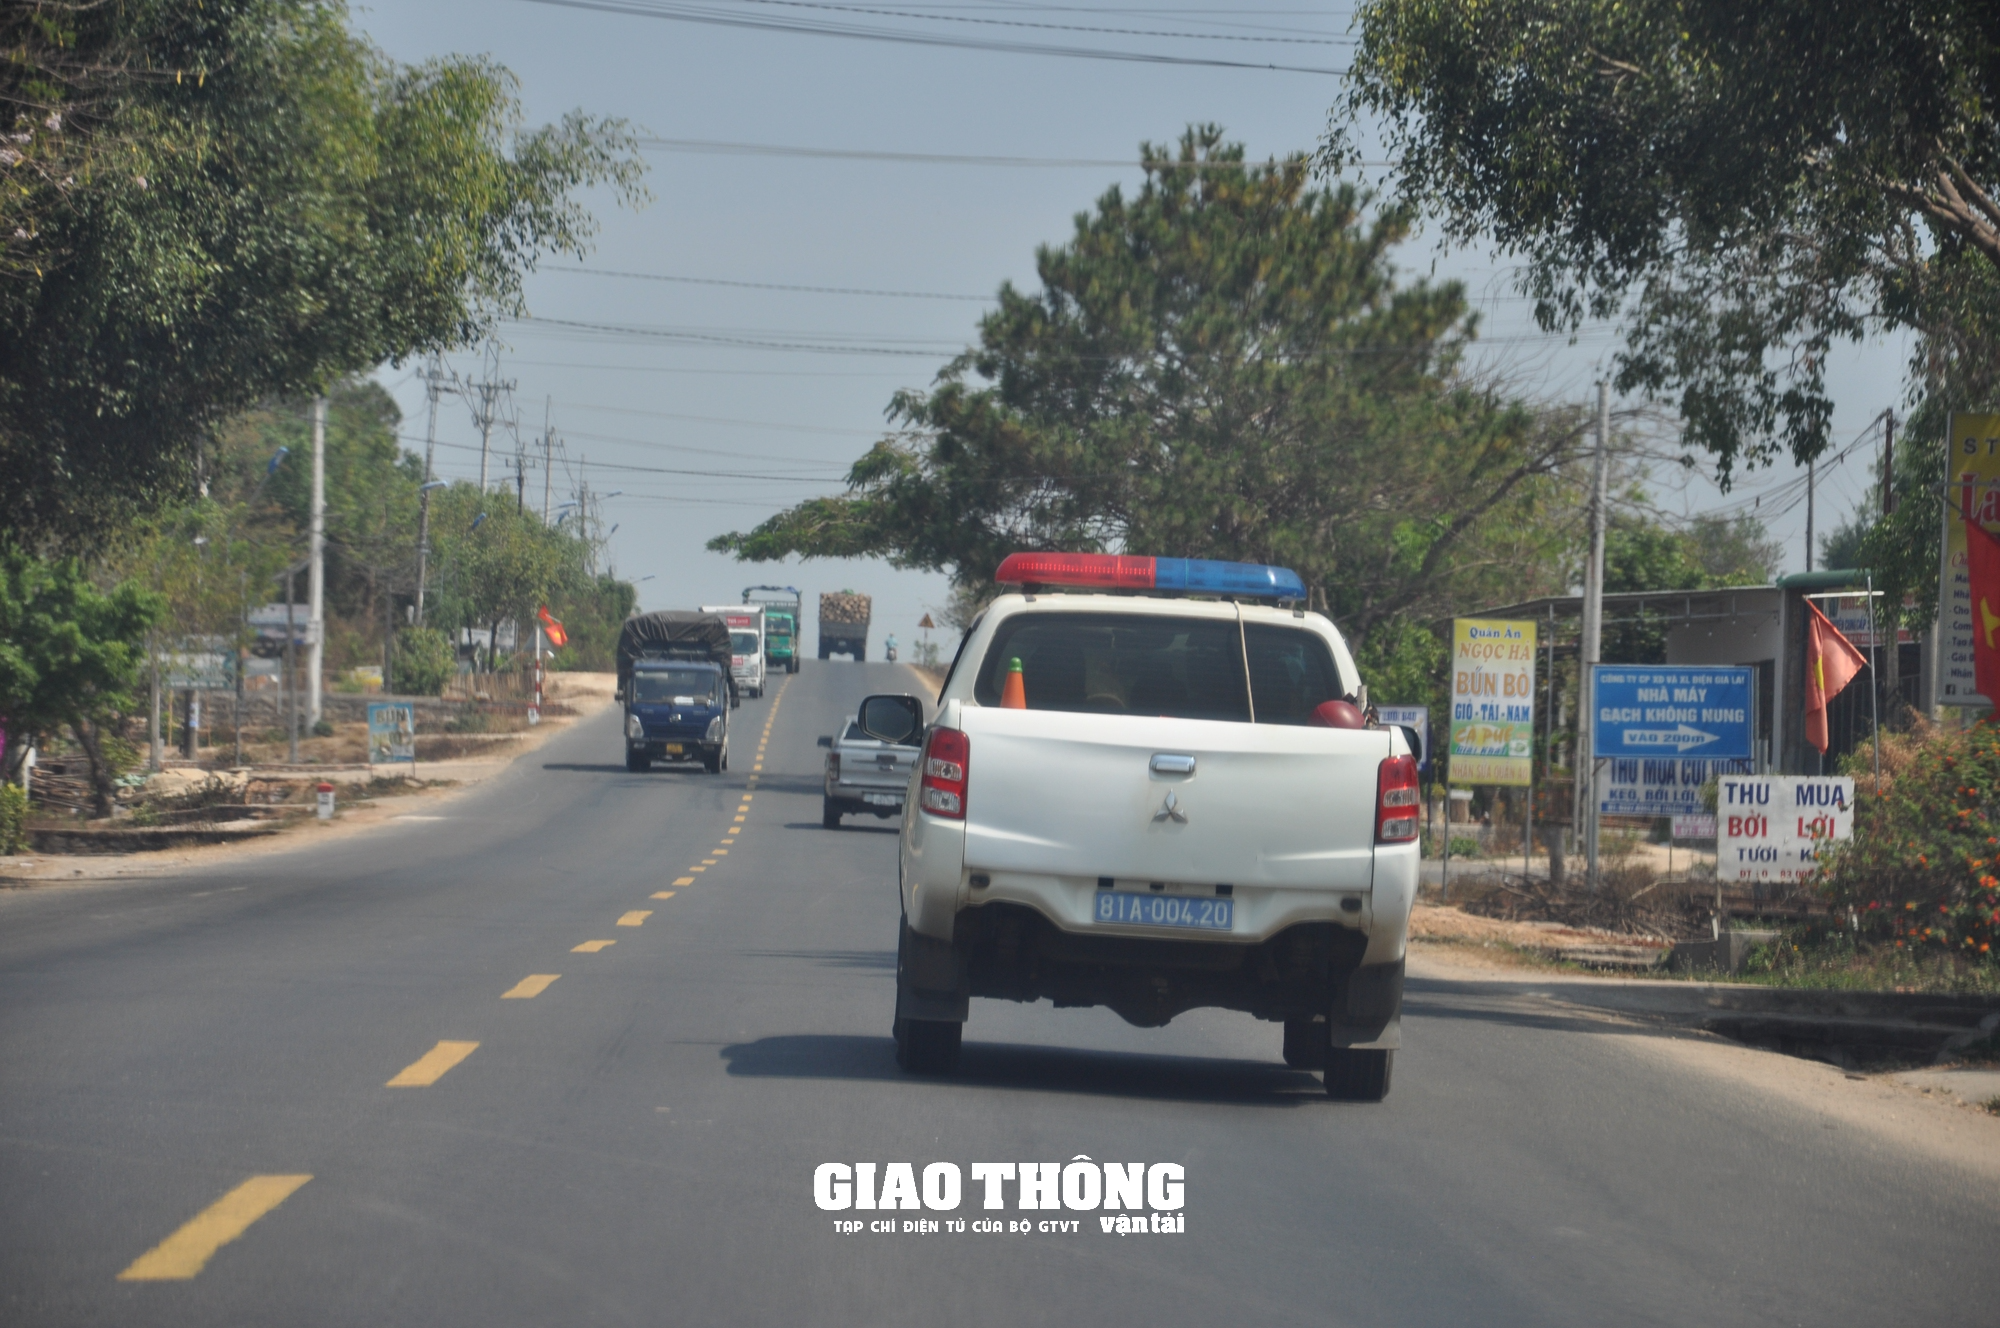 Xe bất tuân phân luồng trên tuyến Hồ Chí Minh qua TP. Pleiku, Ban ATGT đề nghị CSGT xử lý nghiêm - Ảnh 1.